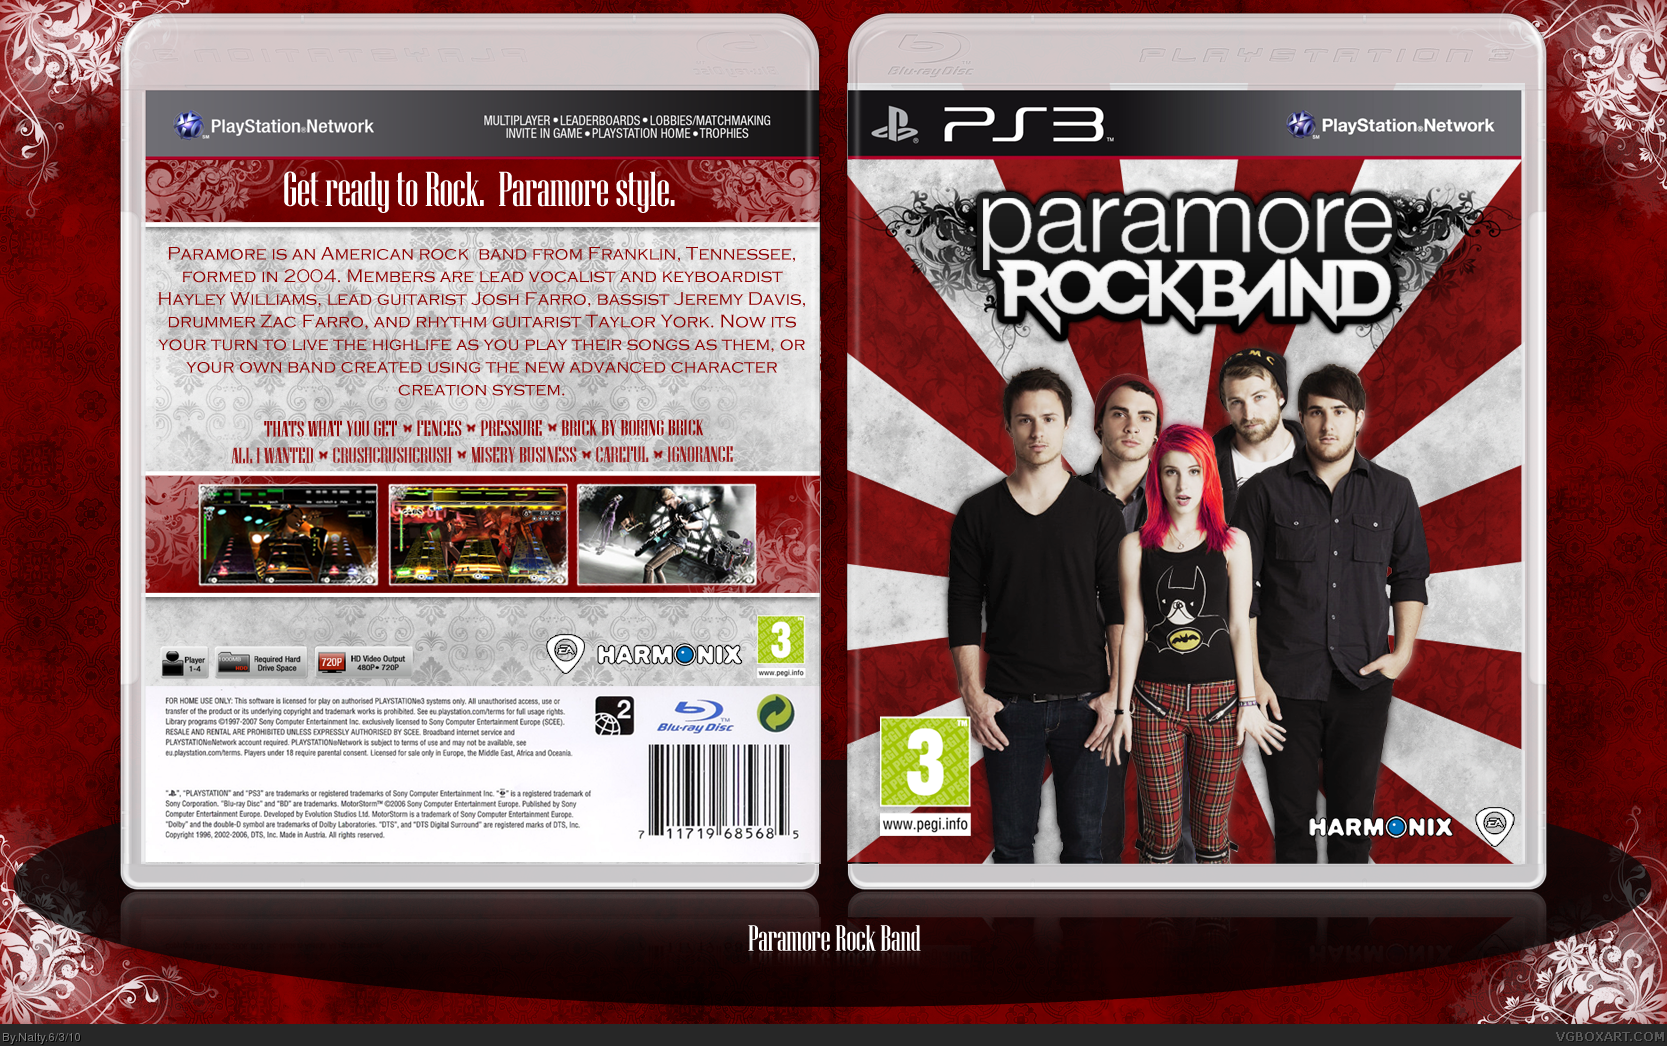 Paramore Rock Band box cover